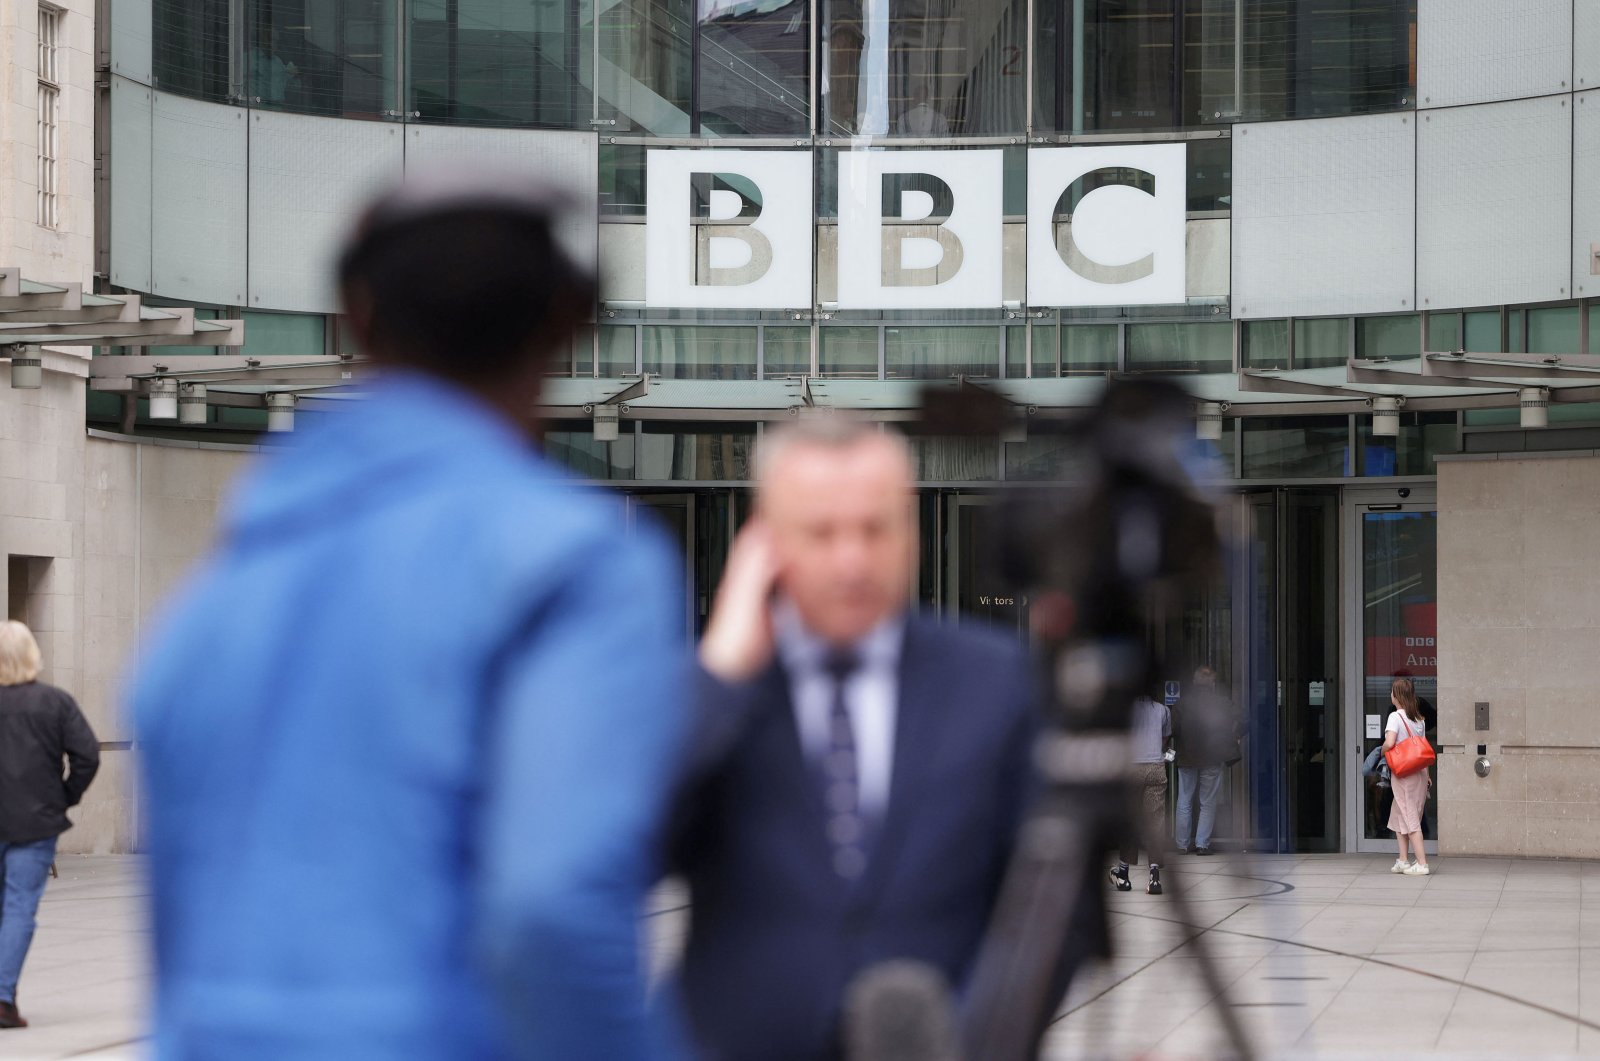 Tuduhan baru terhadap presenter bintang meningkatkan tekanan pada BBC